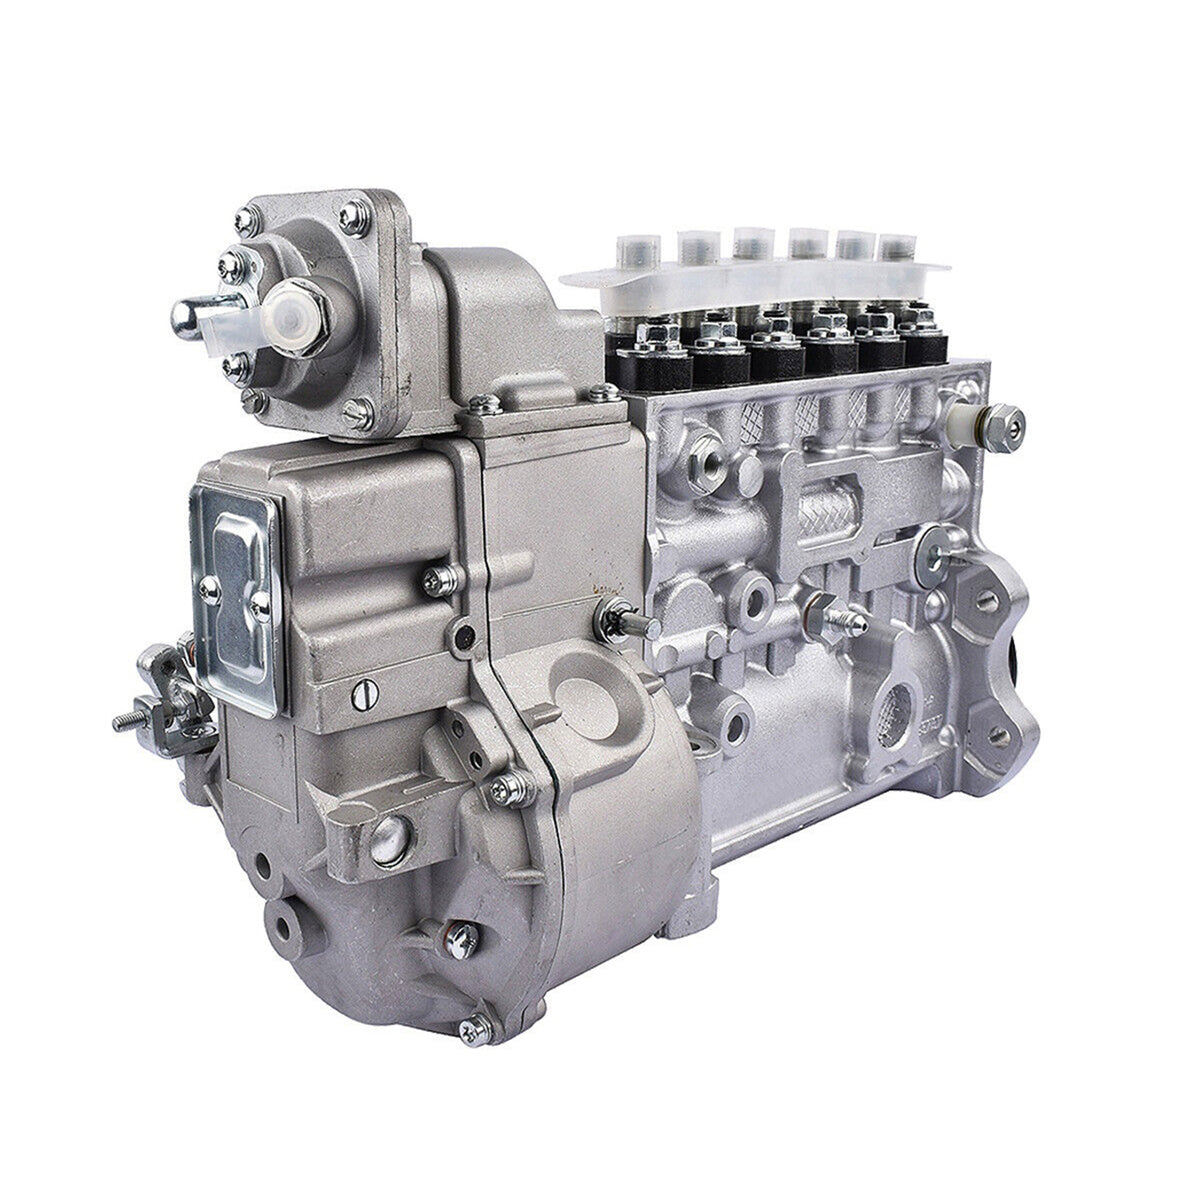 P7100 Fuel Injection Pump 3931537 0402736887 for 94-98 Dodge Cummins 5.9L Diesel 12V Engine